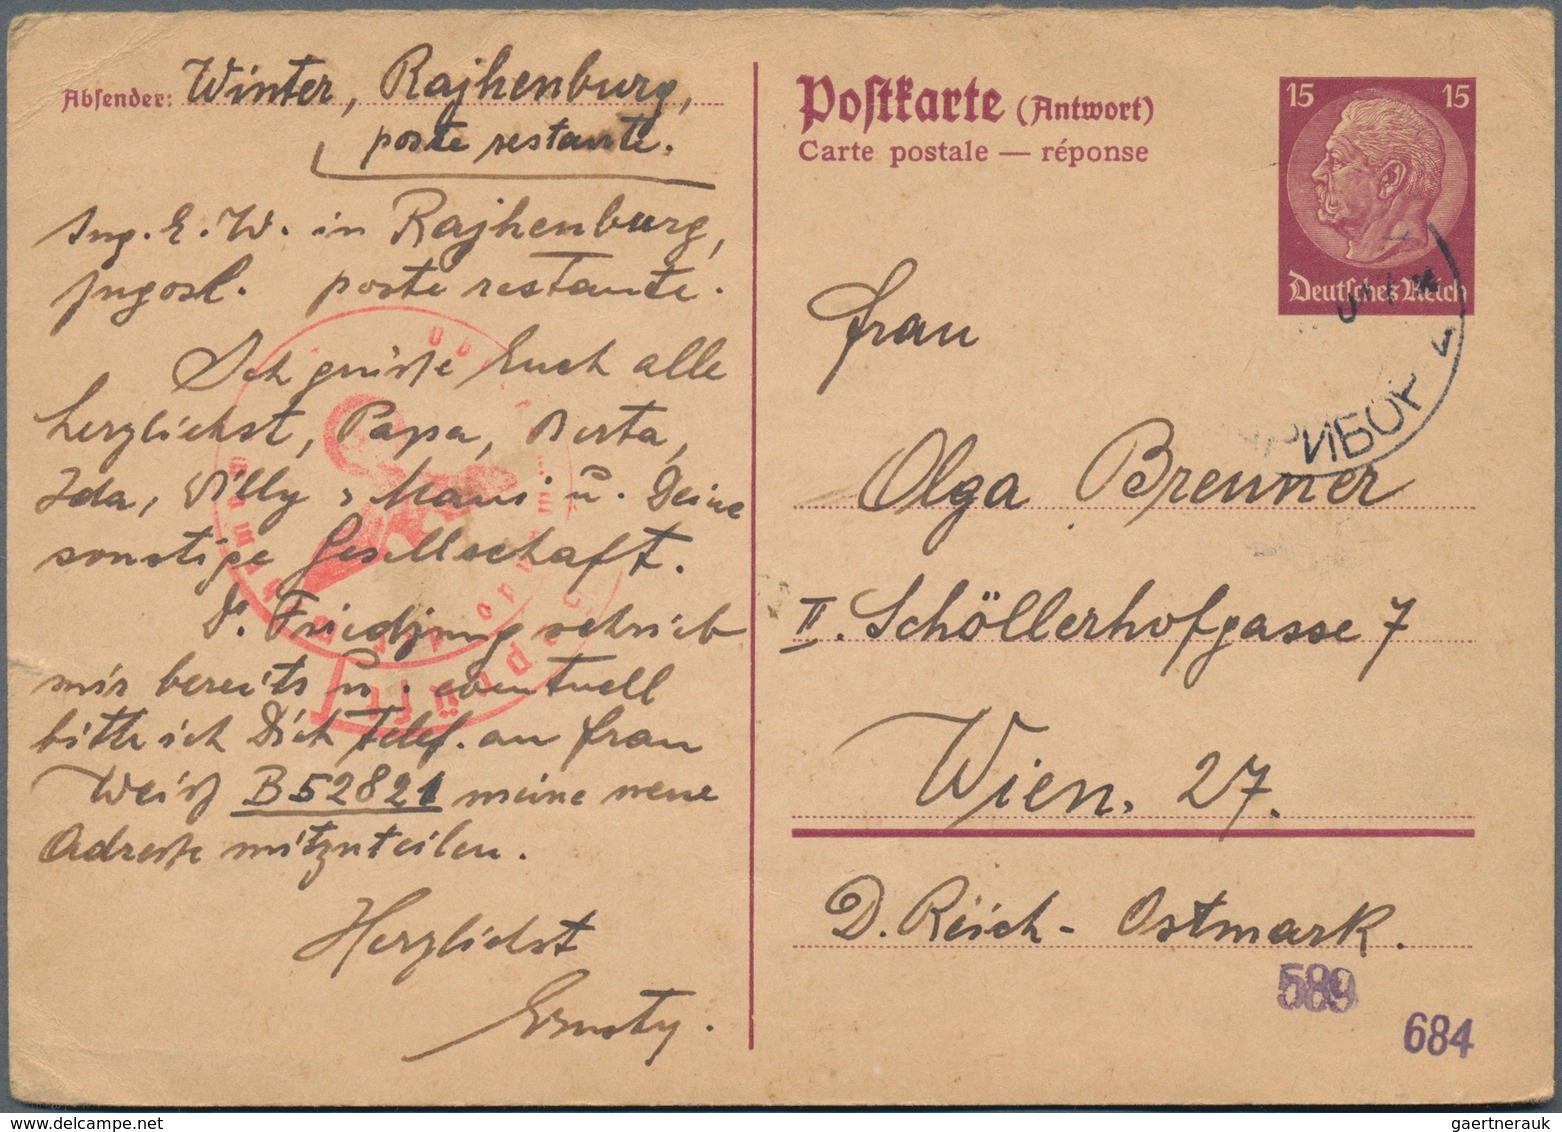 Deutsches Reich: 1829-1944, Partie mit über 570 Briefen, Ganzsachen und Ansichtskarten, dabei viel P